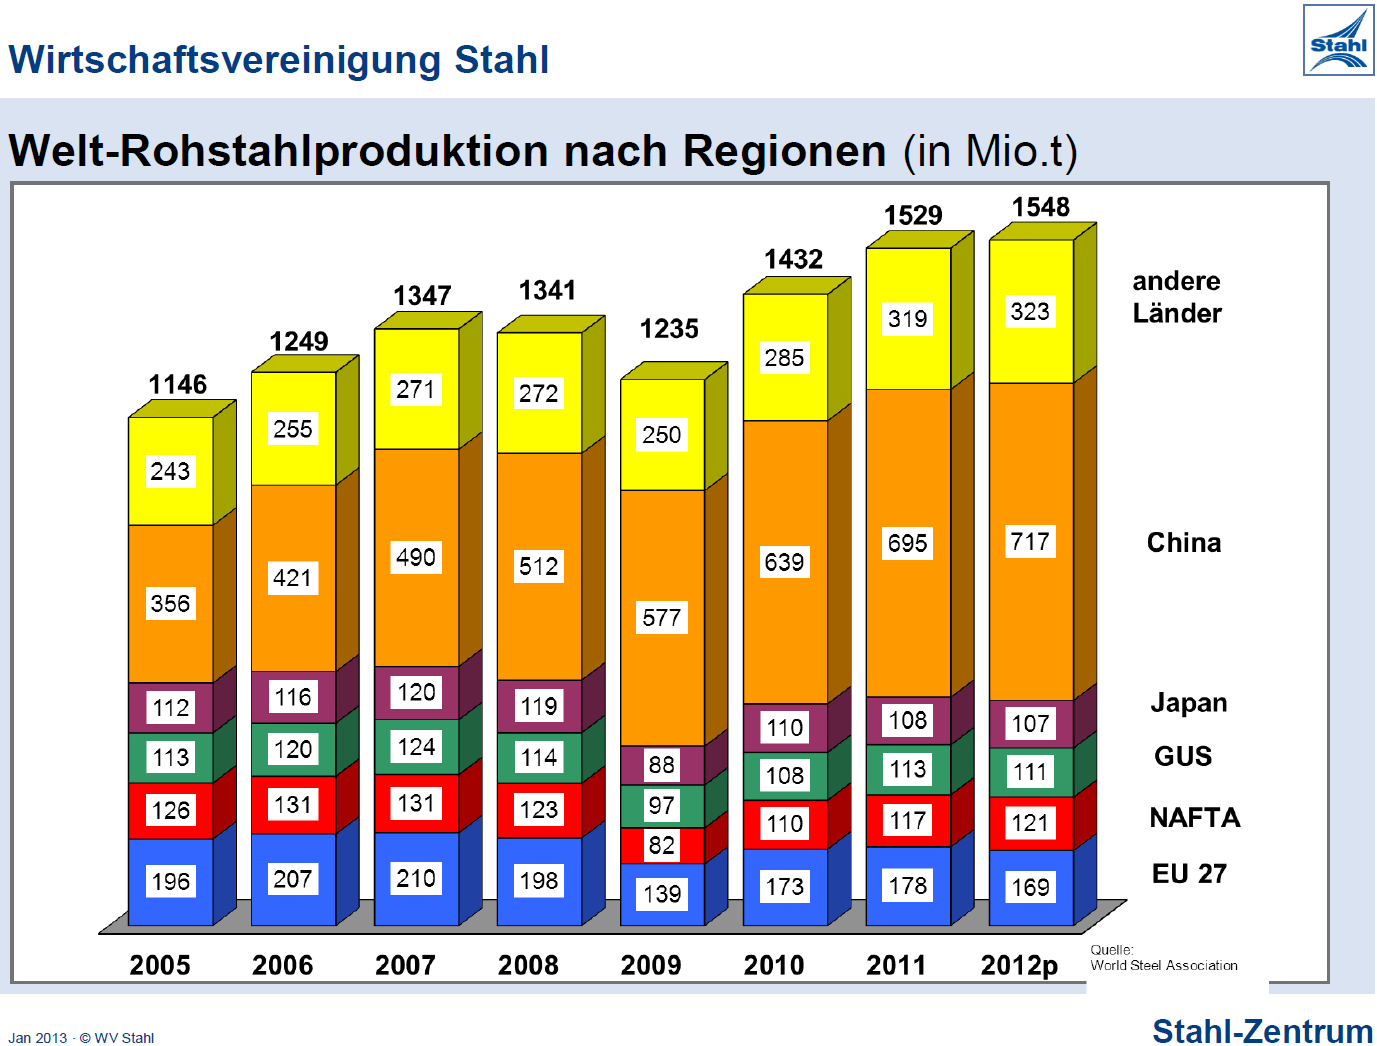 Rohstahlproduktion weltweit Im Jahr 2012 erreichte die Weltrohstahlproduktion mit 1548 Mio. t einen neuen Höchststand. Verantwortlich dafür war wiederum vor allem China, das 46 % der Welt produziert.